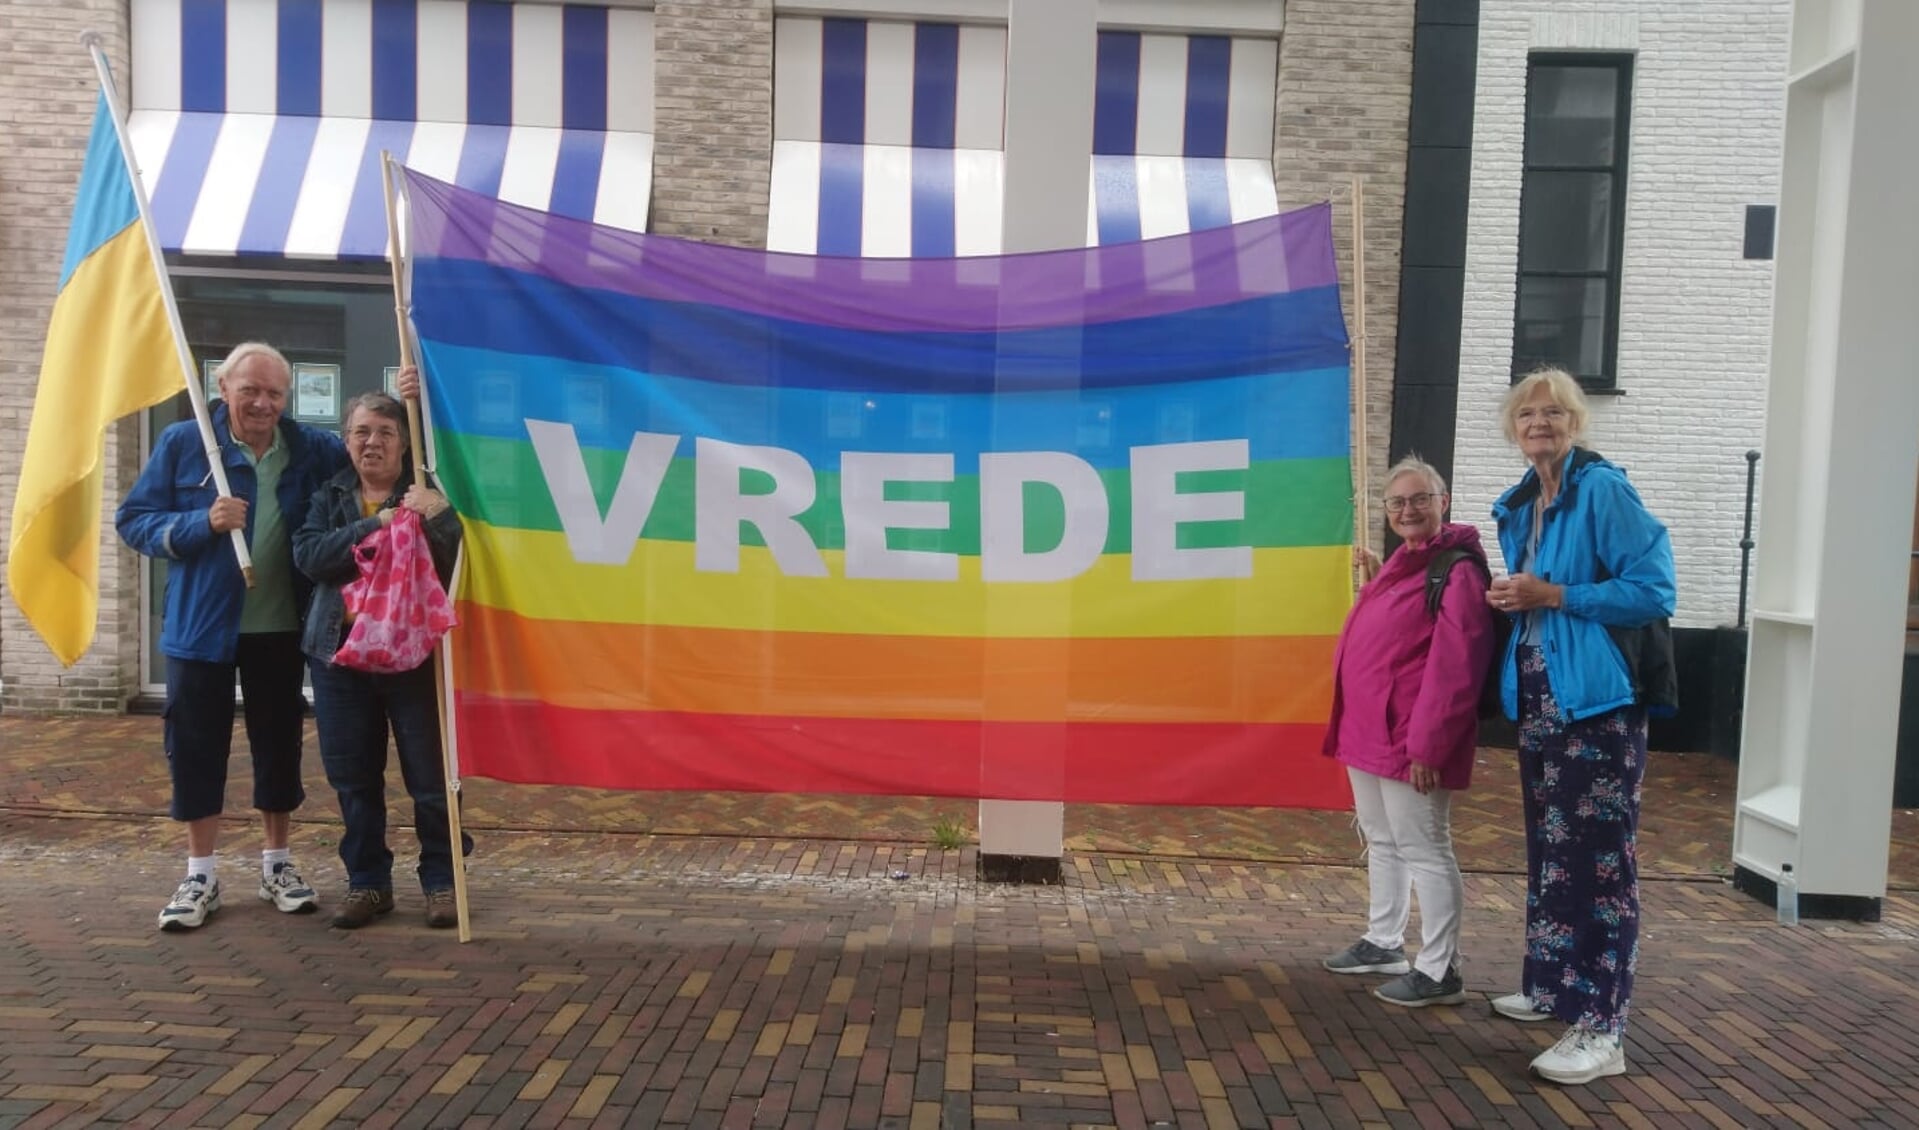 Vrijwilligers van Veenendalers Voor Vrede en Vredesinitiatief Veenendaal, met de vredesvlag